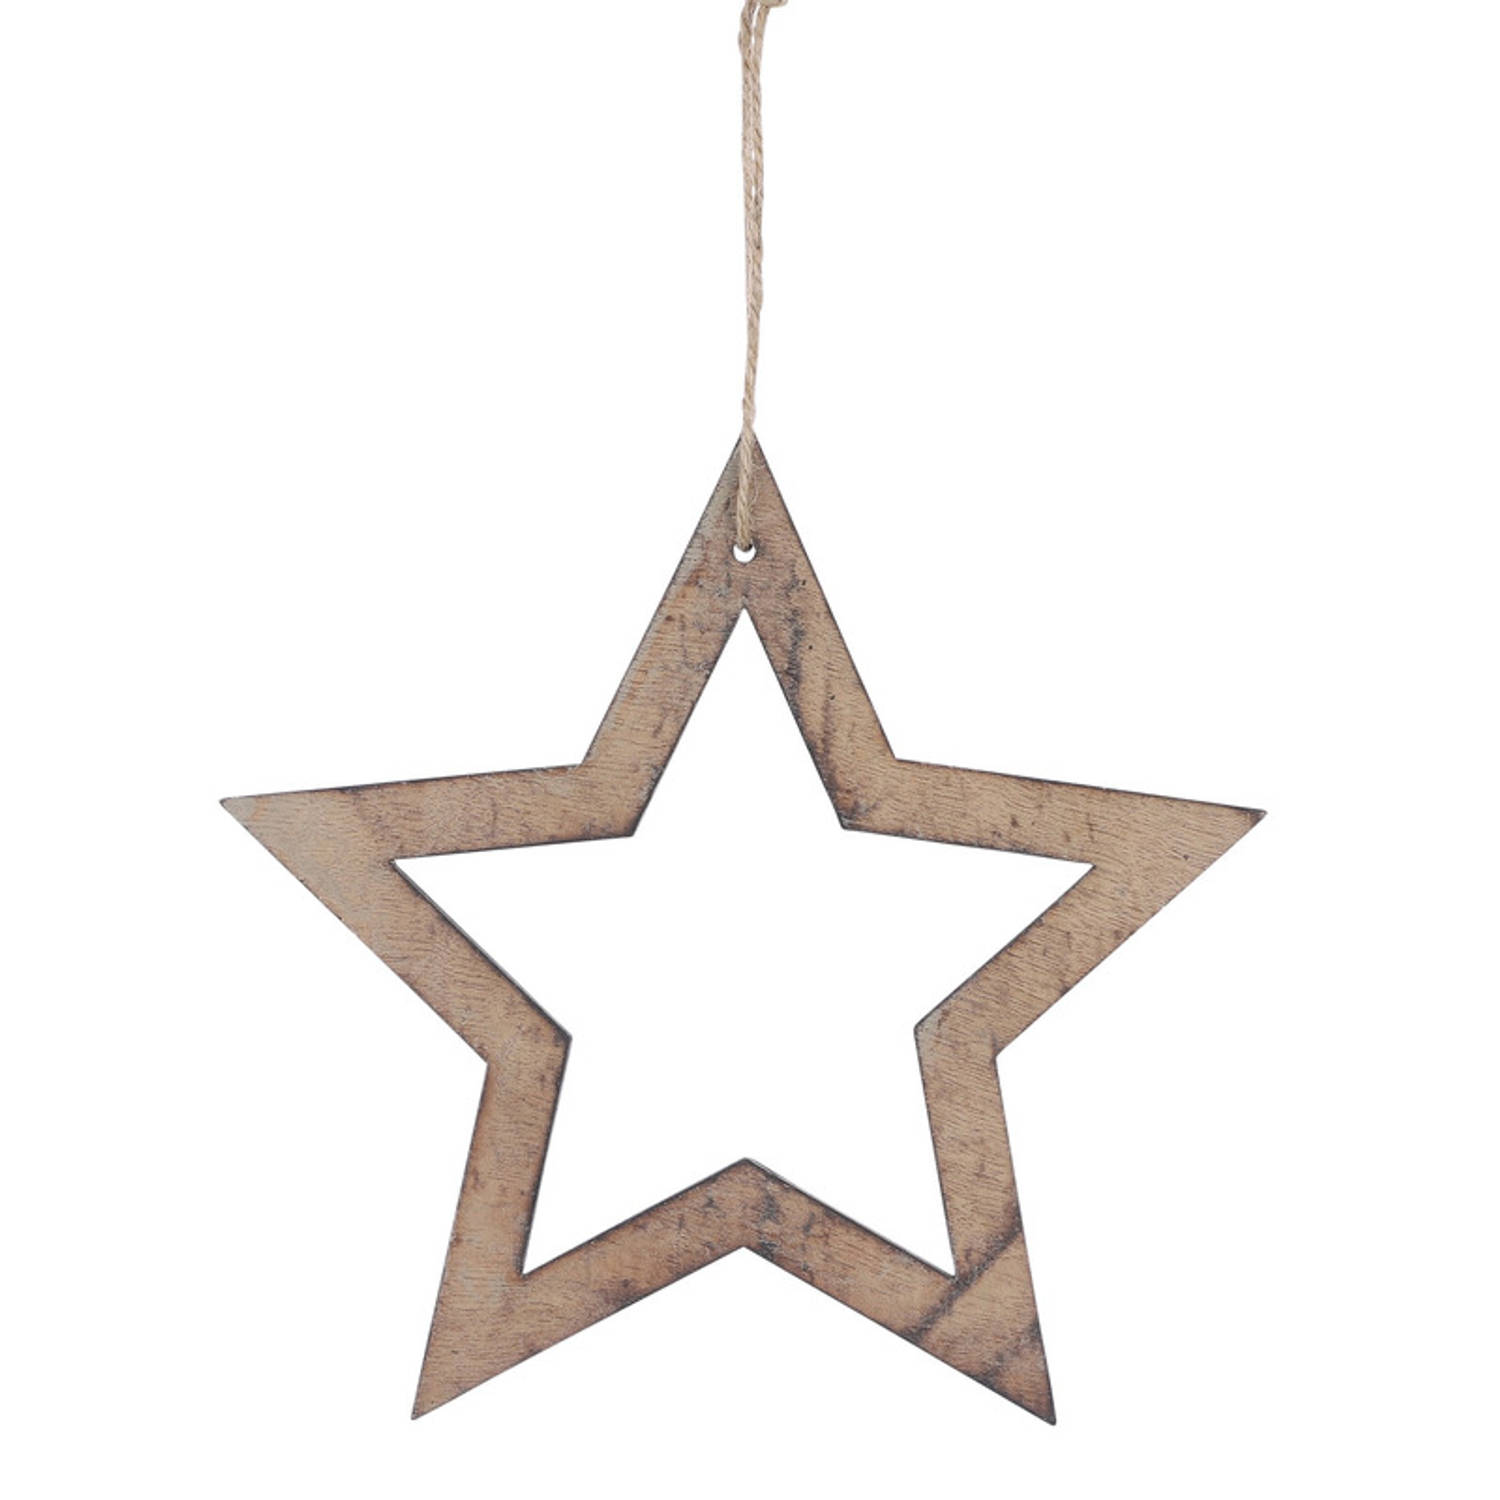 1x Kerstboomversiering sterren ornamenten van hout 20 cm - Kersthangers